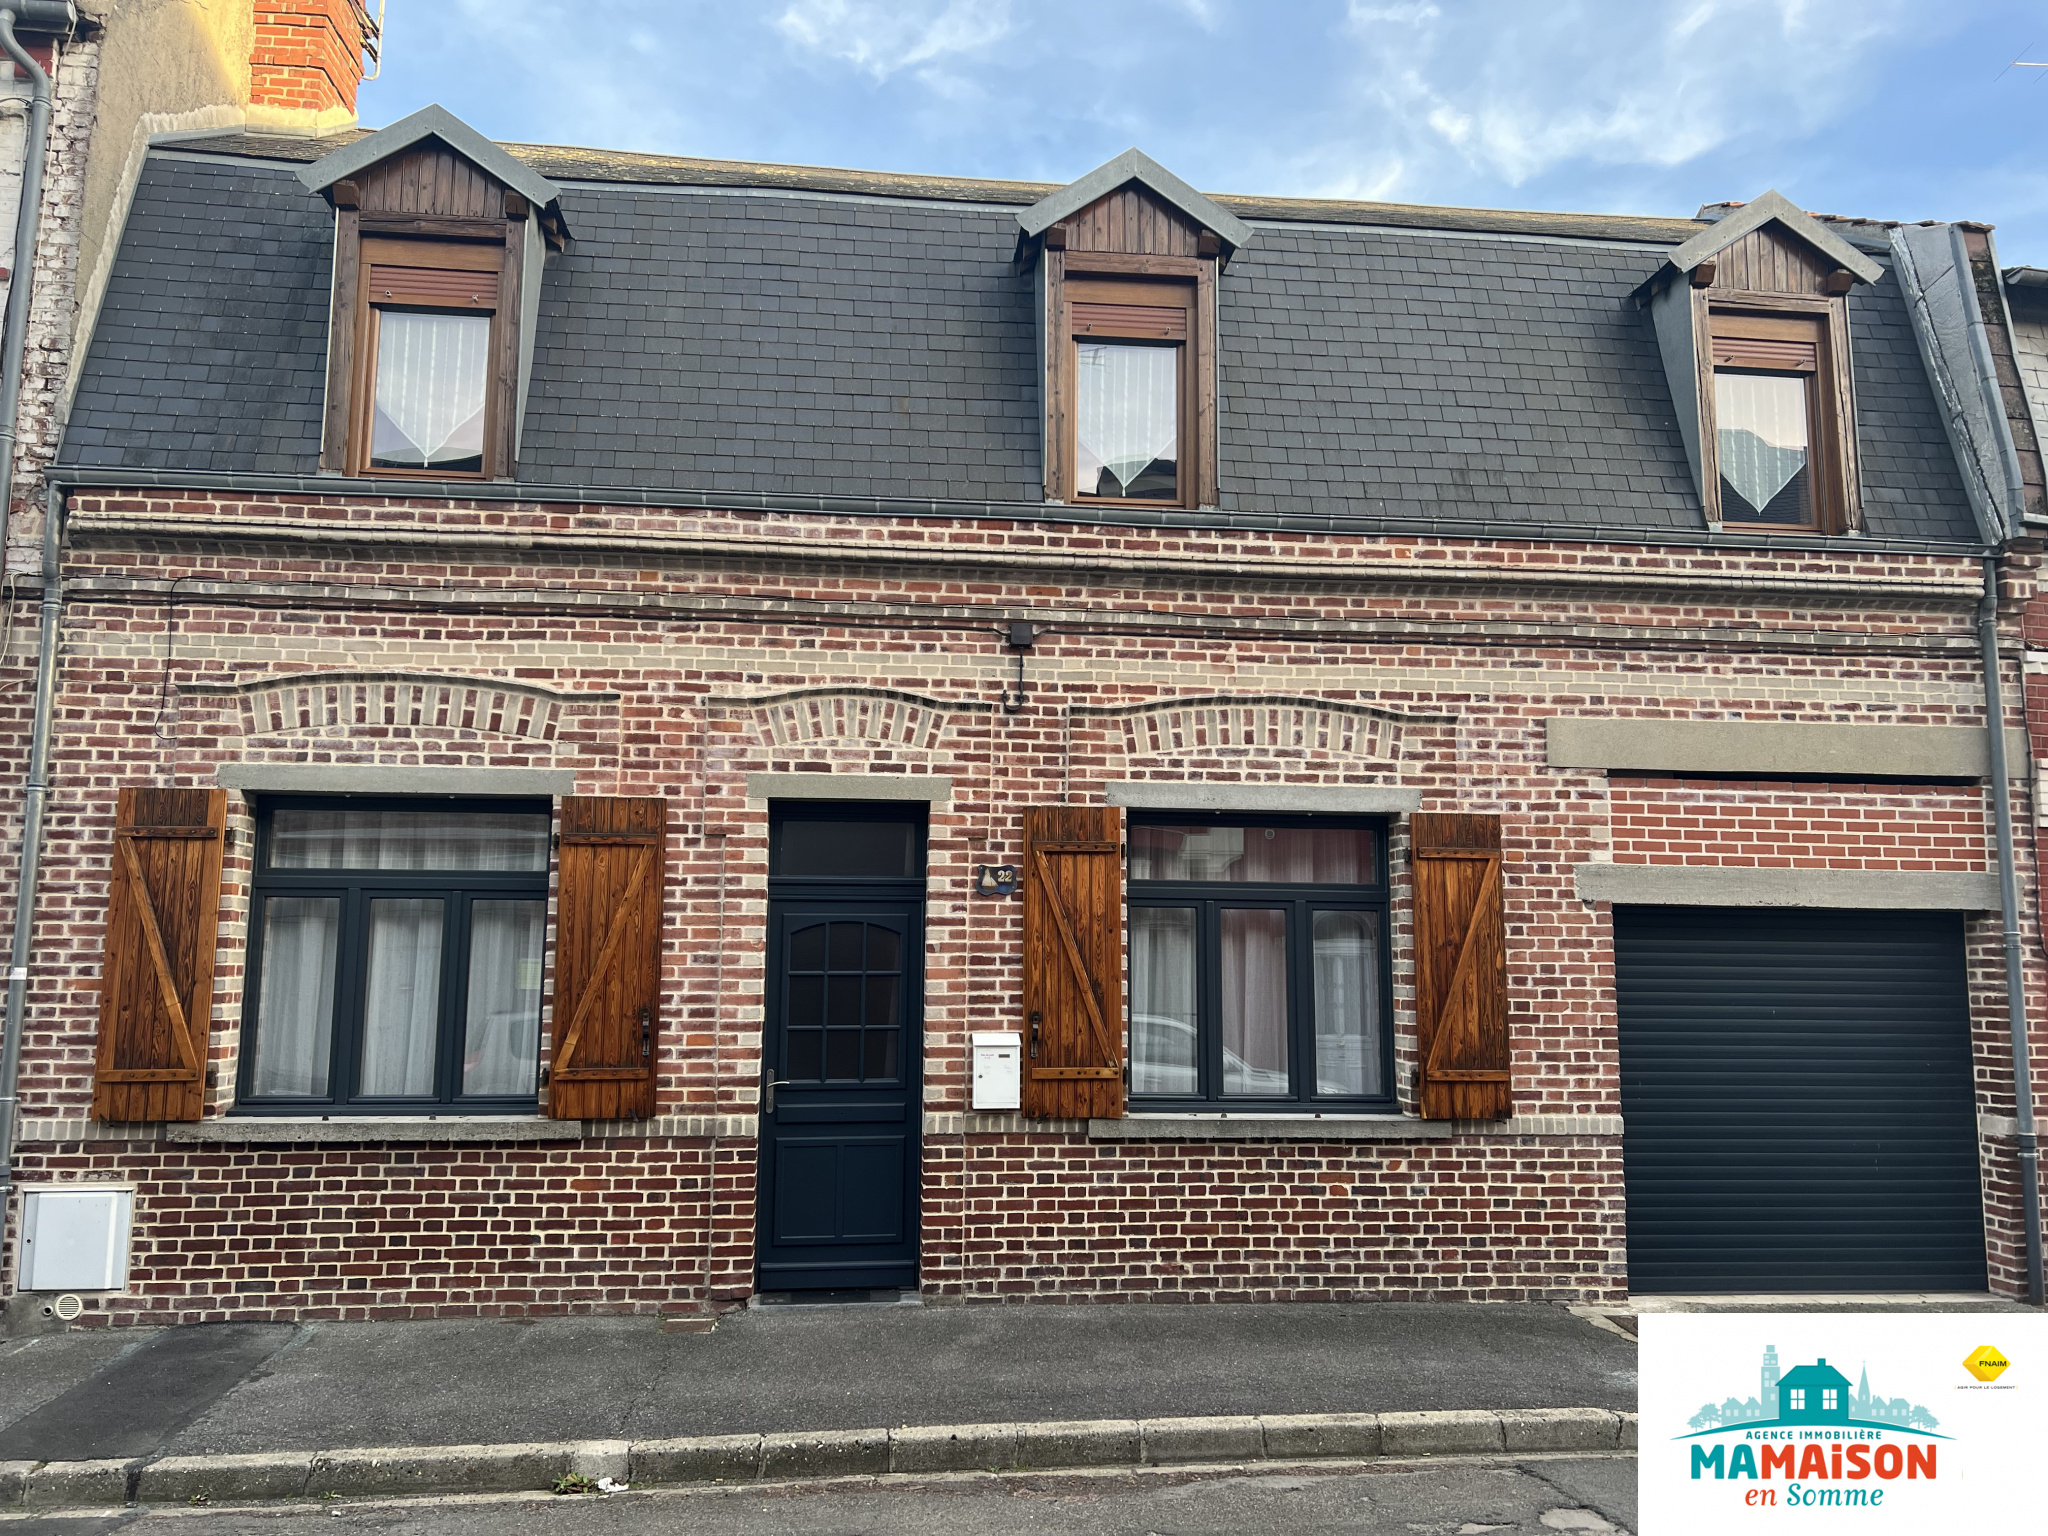 Immo80 – L'immobilier à Amiens et dans la Somme-Proche centre ville d’Albert, jolie maison, 6 pièces, 4 chambres, avec jardin et garage.